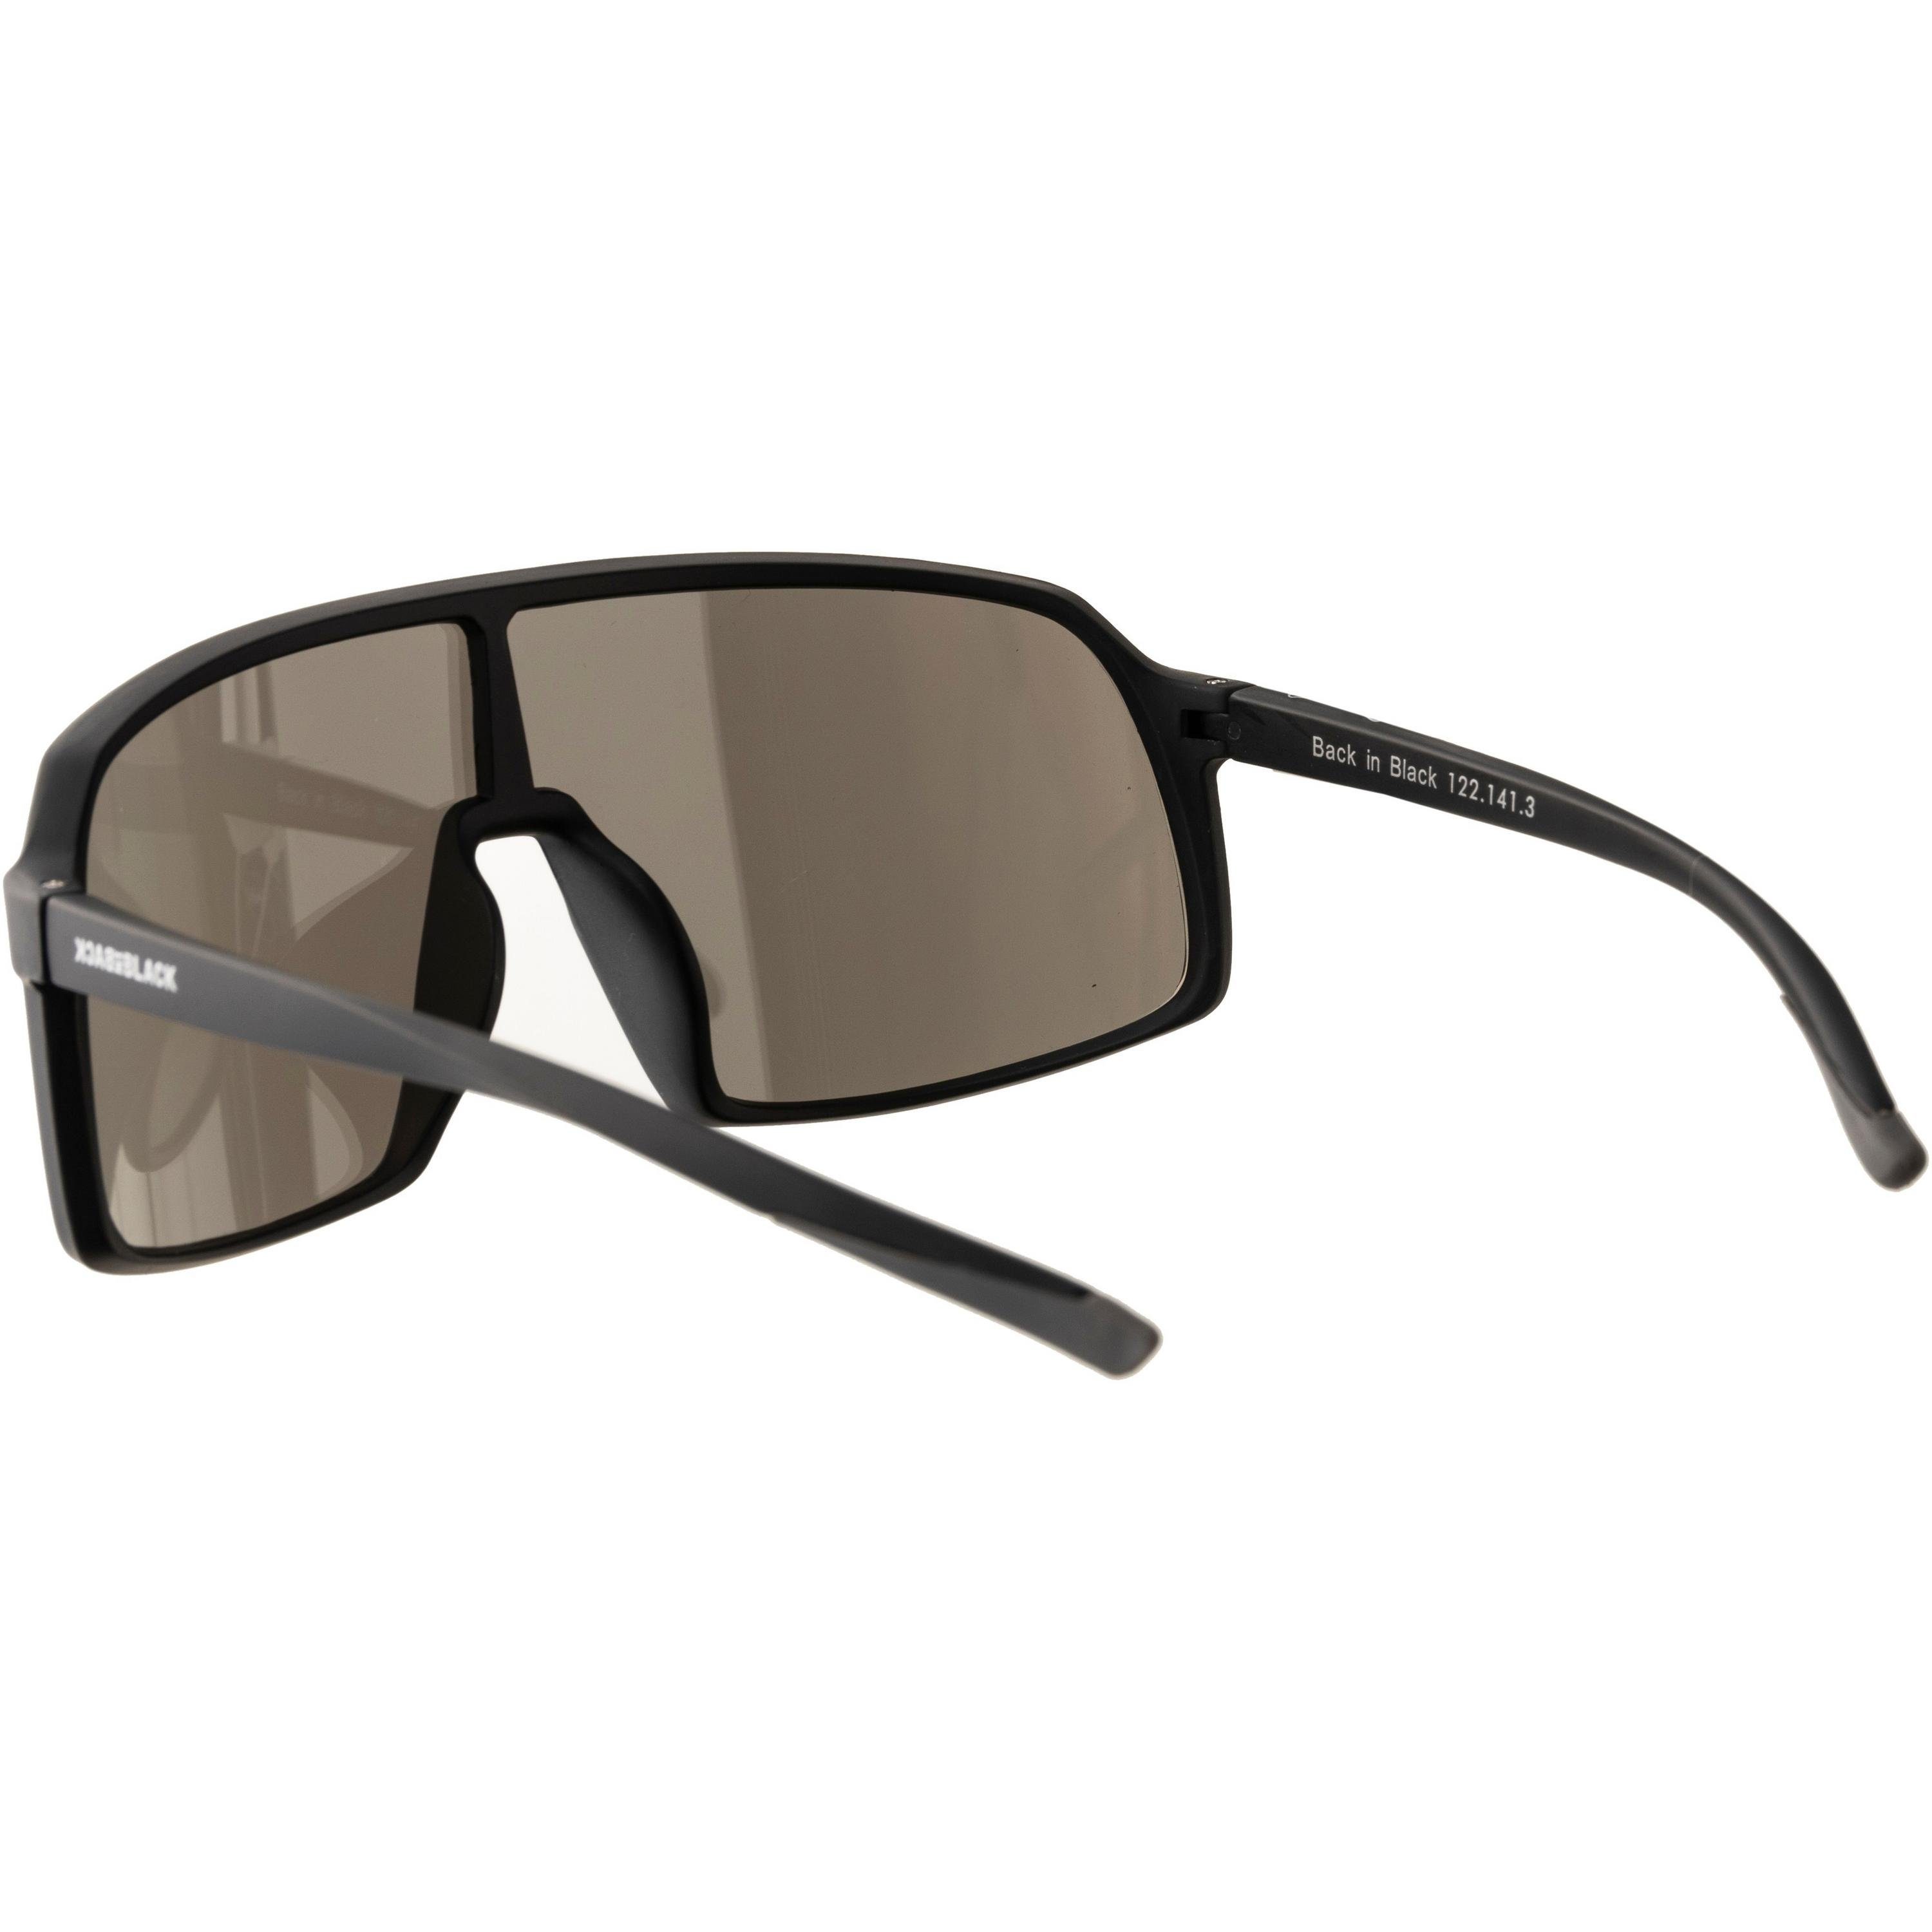 große BACK Verspiegelte Eyewear BLACK IN Monoscheibe Sonnenbrille Gläser,